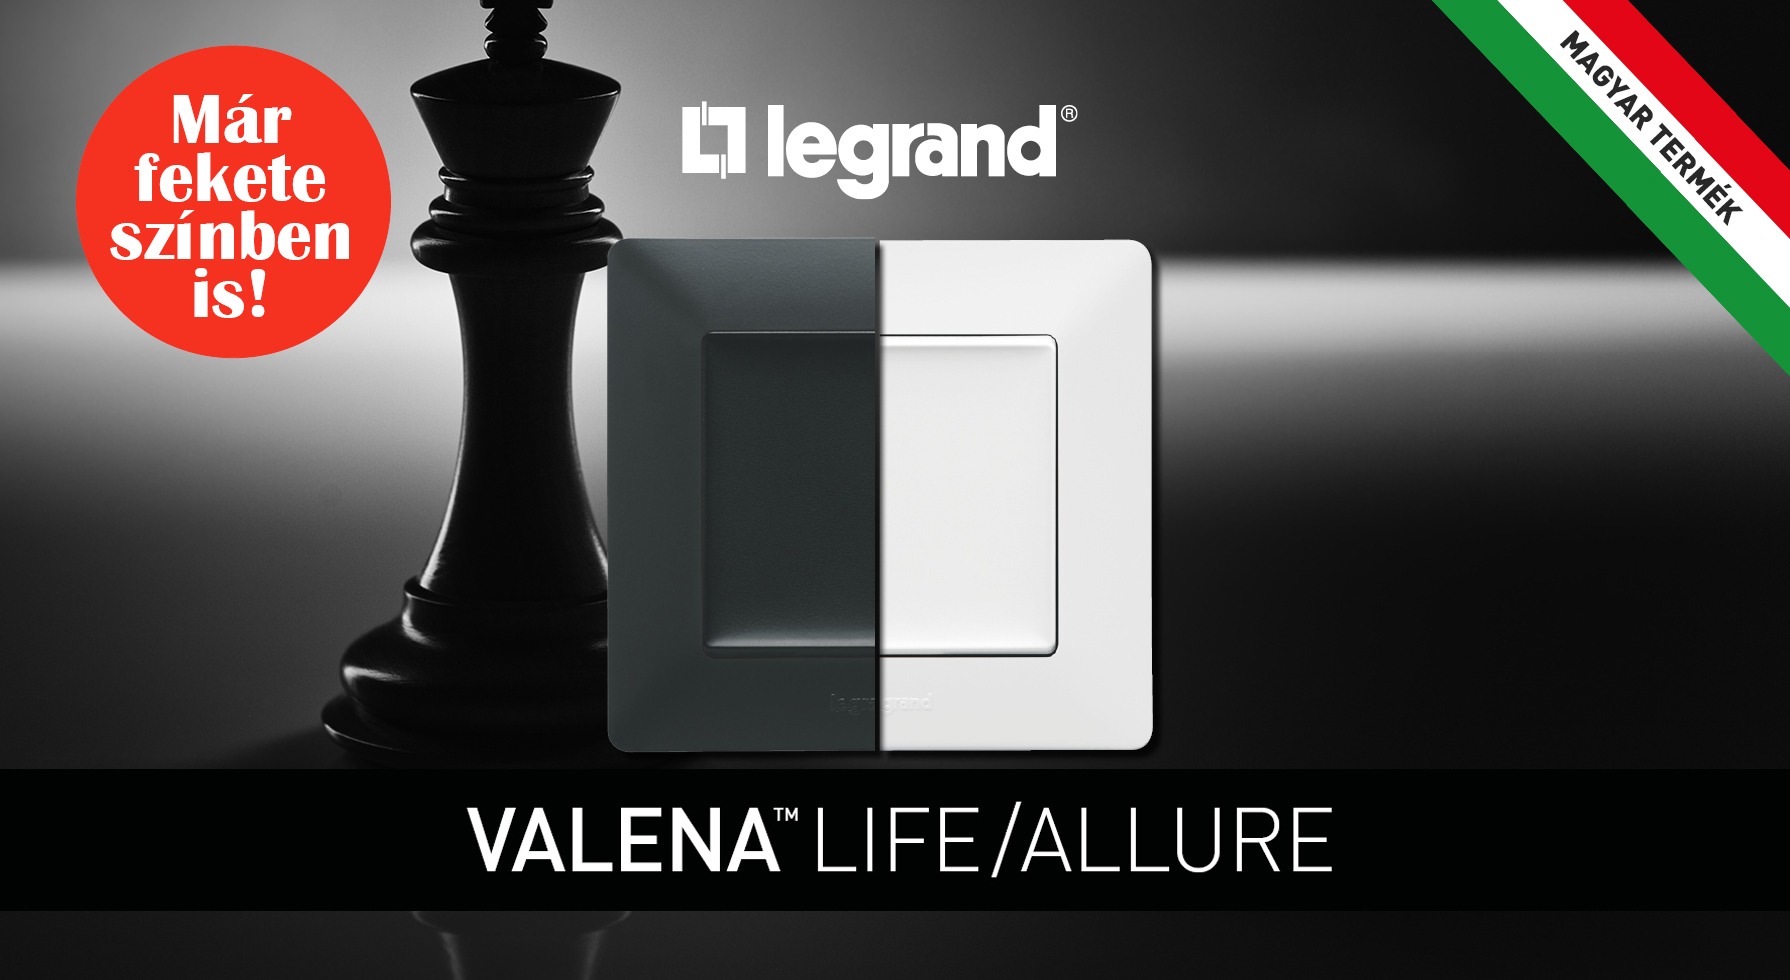 Valena Life már fekete színben is